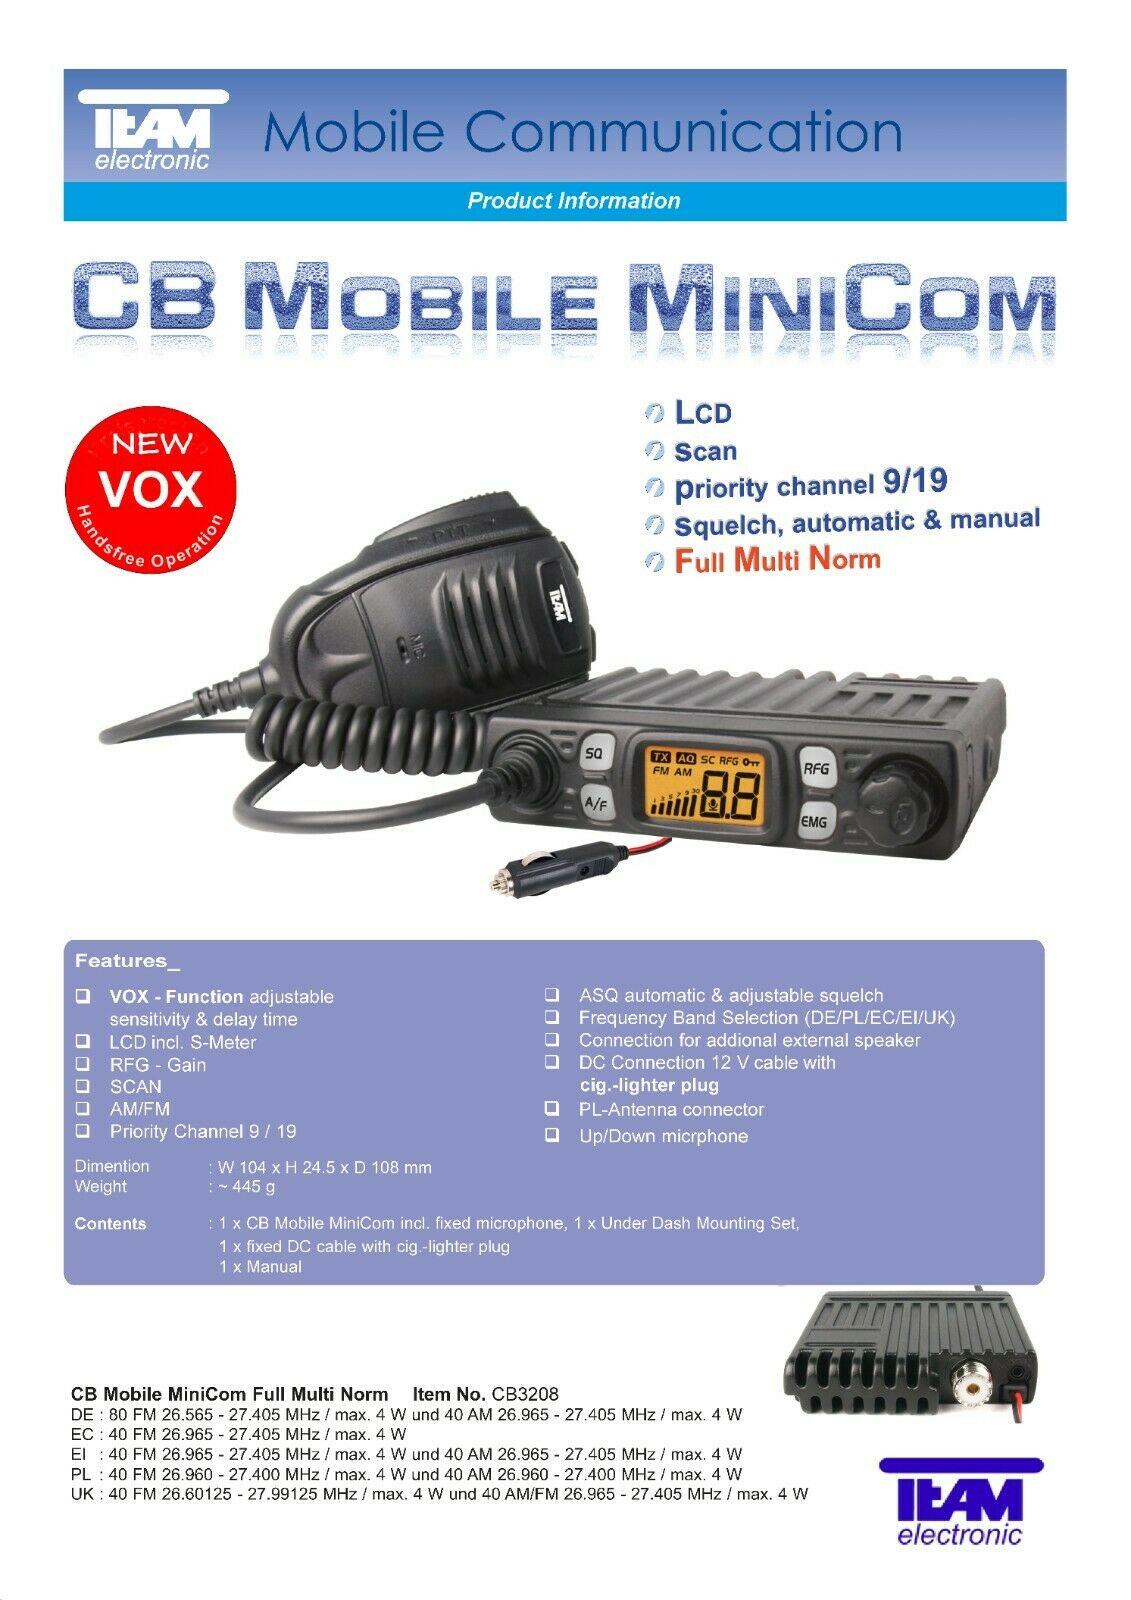 SIGMA Team CB Mobile MiniCom Full Multi Norm AM FM VOX + Cigar Lighter Plug